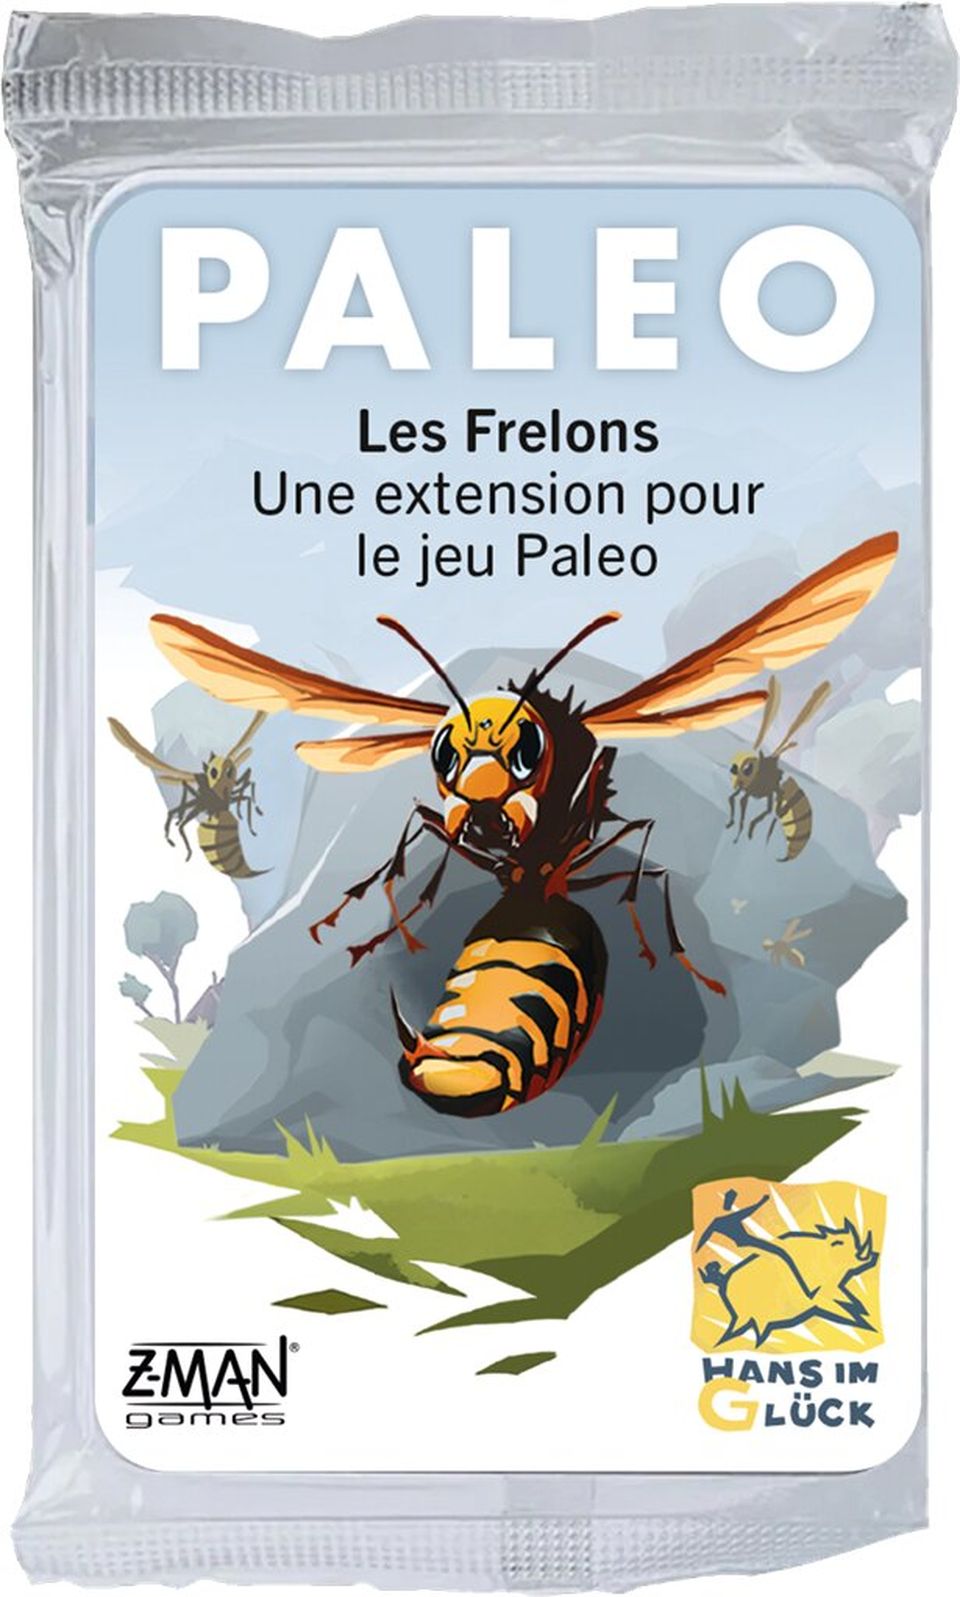 Paleo : Les frelons (Ext) image